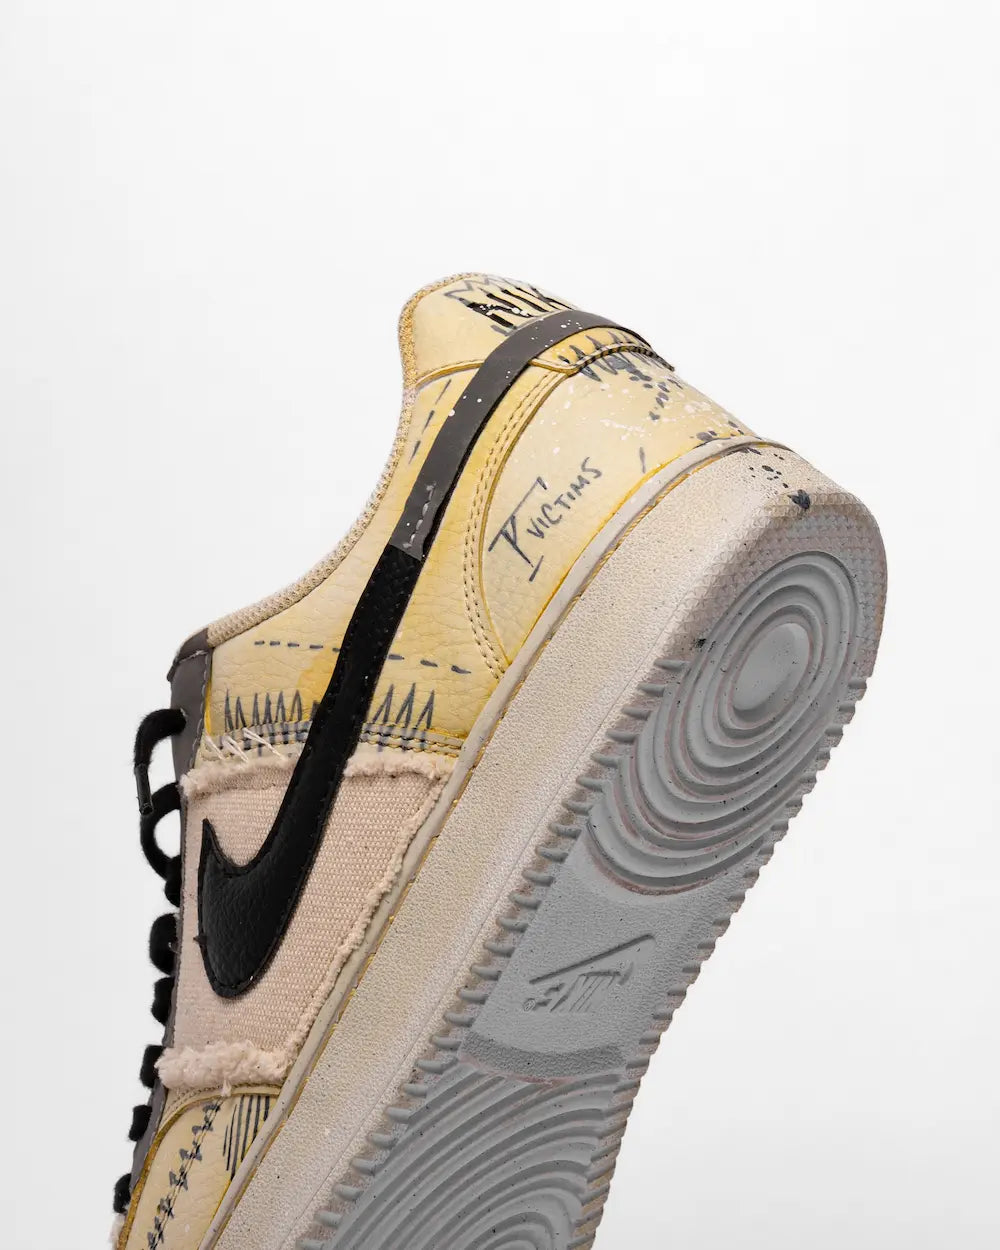 Nike Court Vision decorata con scritte, simboli, piccoli disegni, stencil e tessuti, nelle tonalità giallo e nero (tacco)